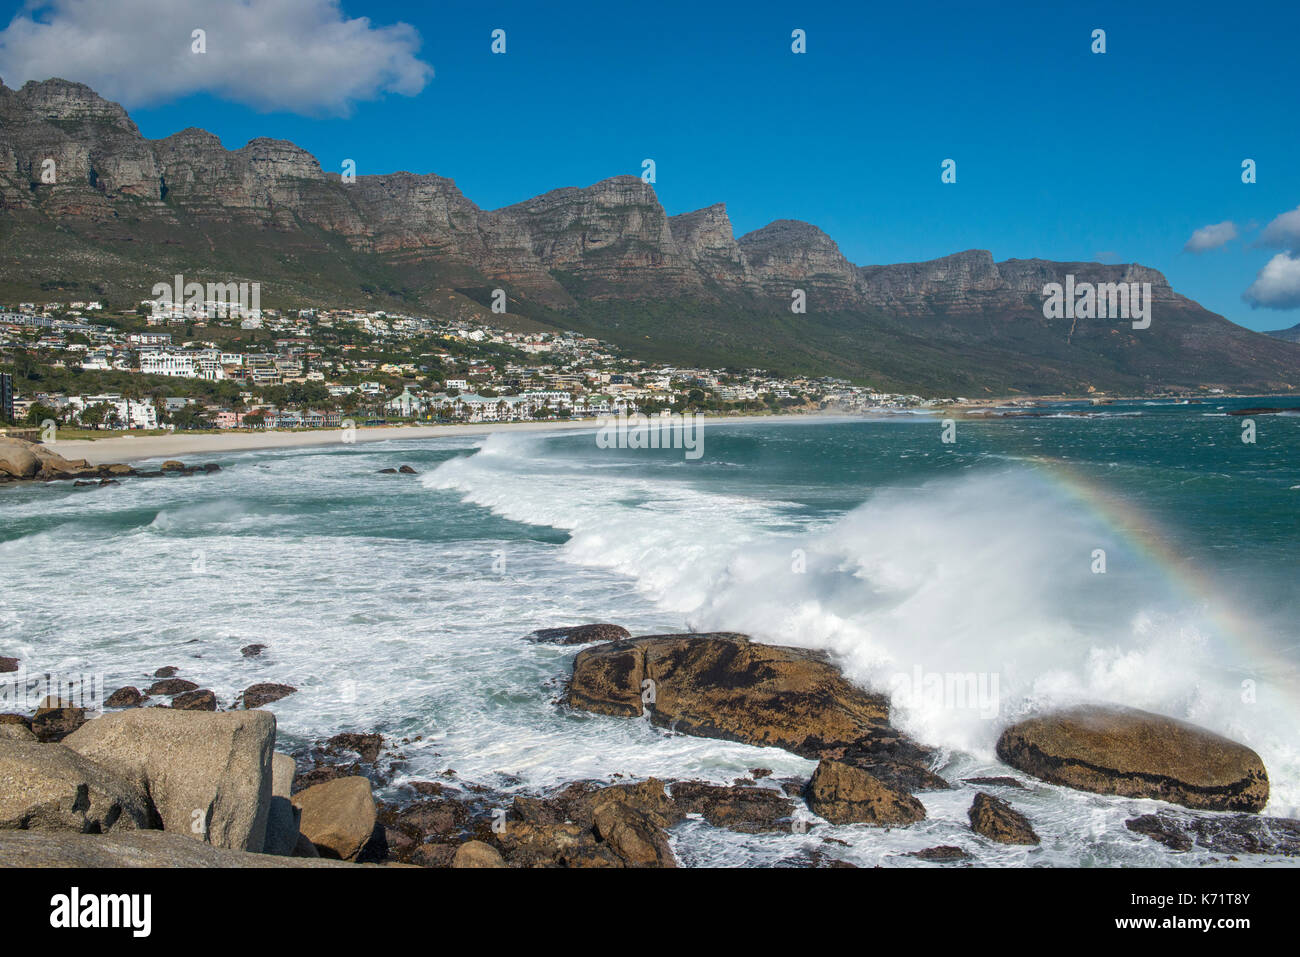 Panoramablick auf die Bucht von Camp mit Surfen und tweleve Apostel Berge, Cape Town, Western Cape, Südafrika Stockfoto